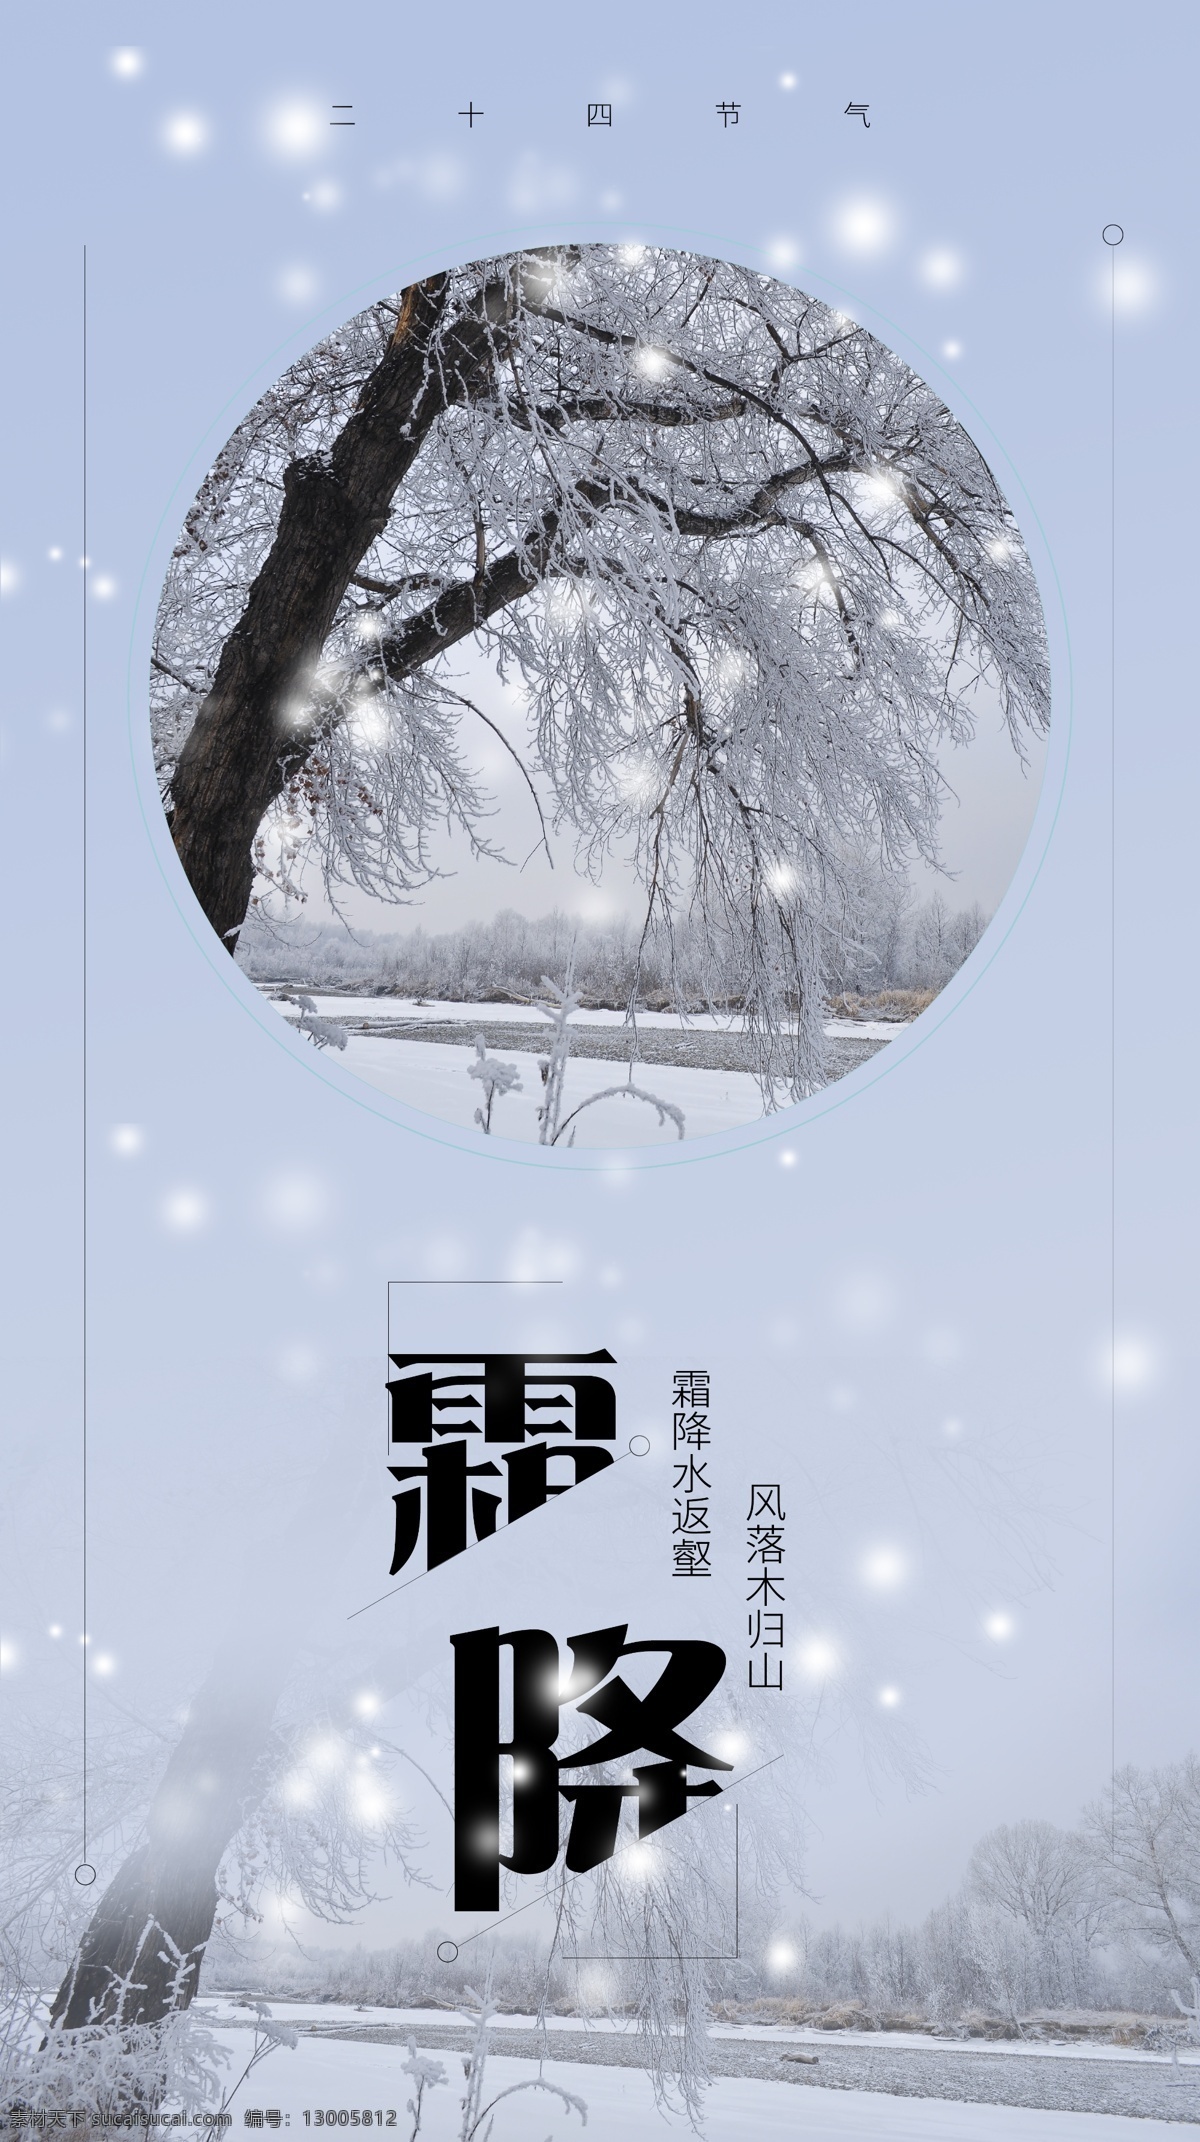 二十四节气 霜降 手机 海报 配 图 节气 雪景 唯美 冬季 雪 树